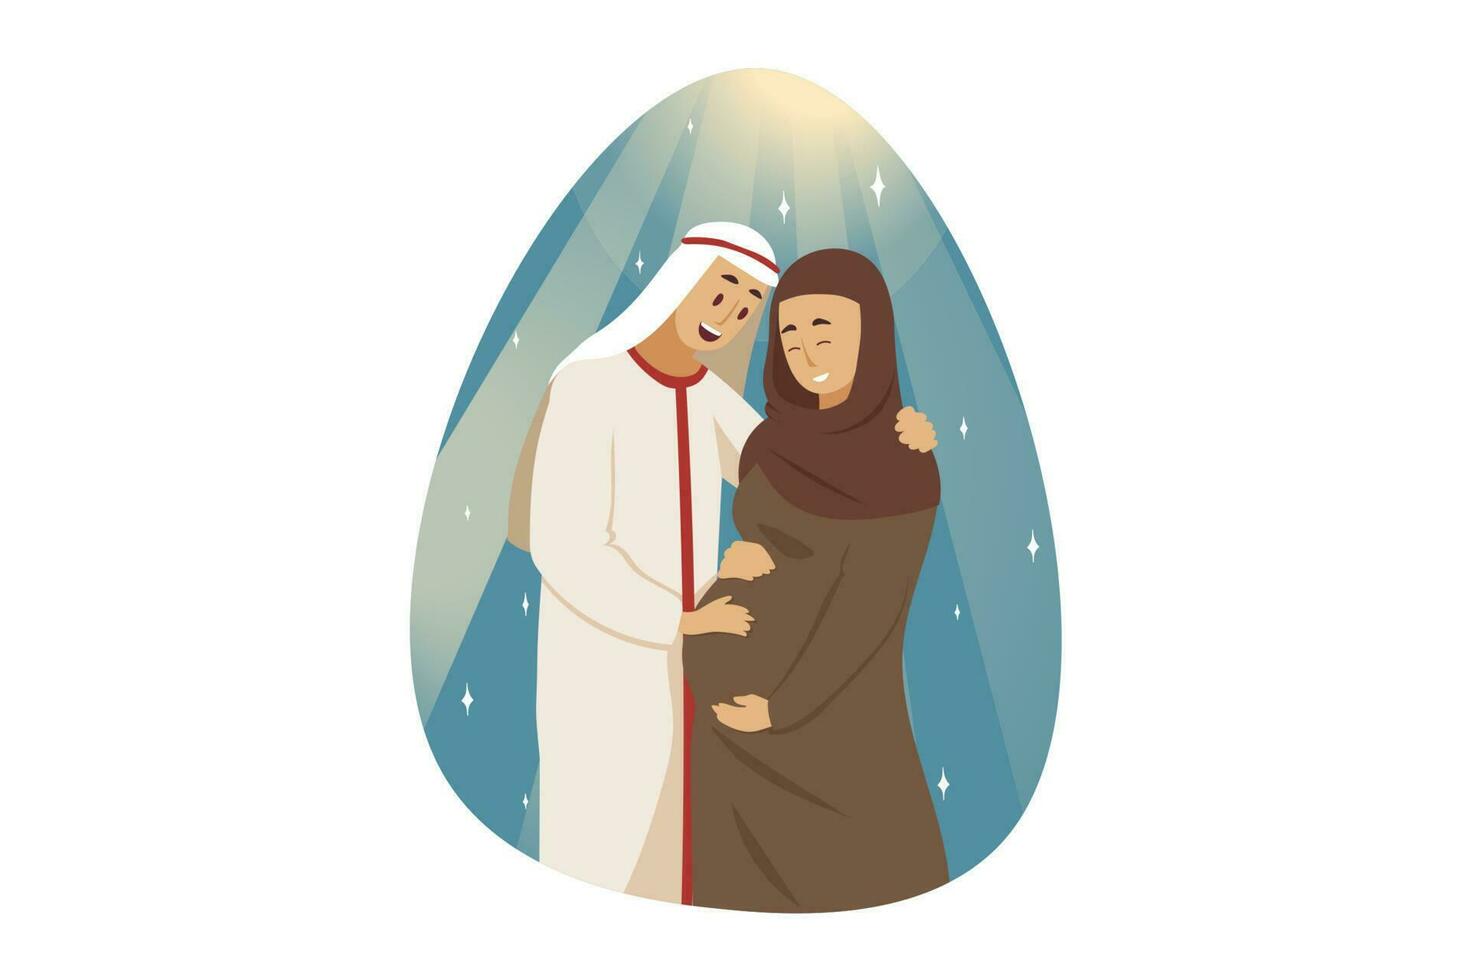 liefde, stel, zwangerschap, familie concept. jong gelukkig Mens moslim vriendje man staand met glimlachen zwanger vrouw vrouw vriendin Arabisch met hijab knuffelen samen. Moederdag en moederschap. vector